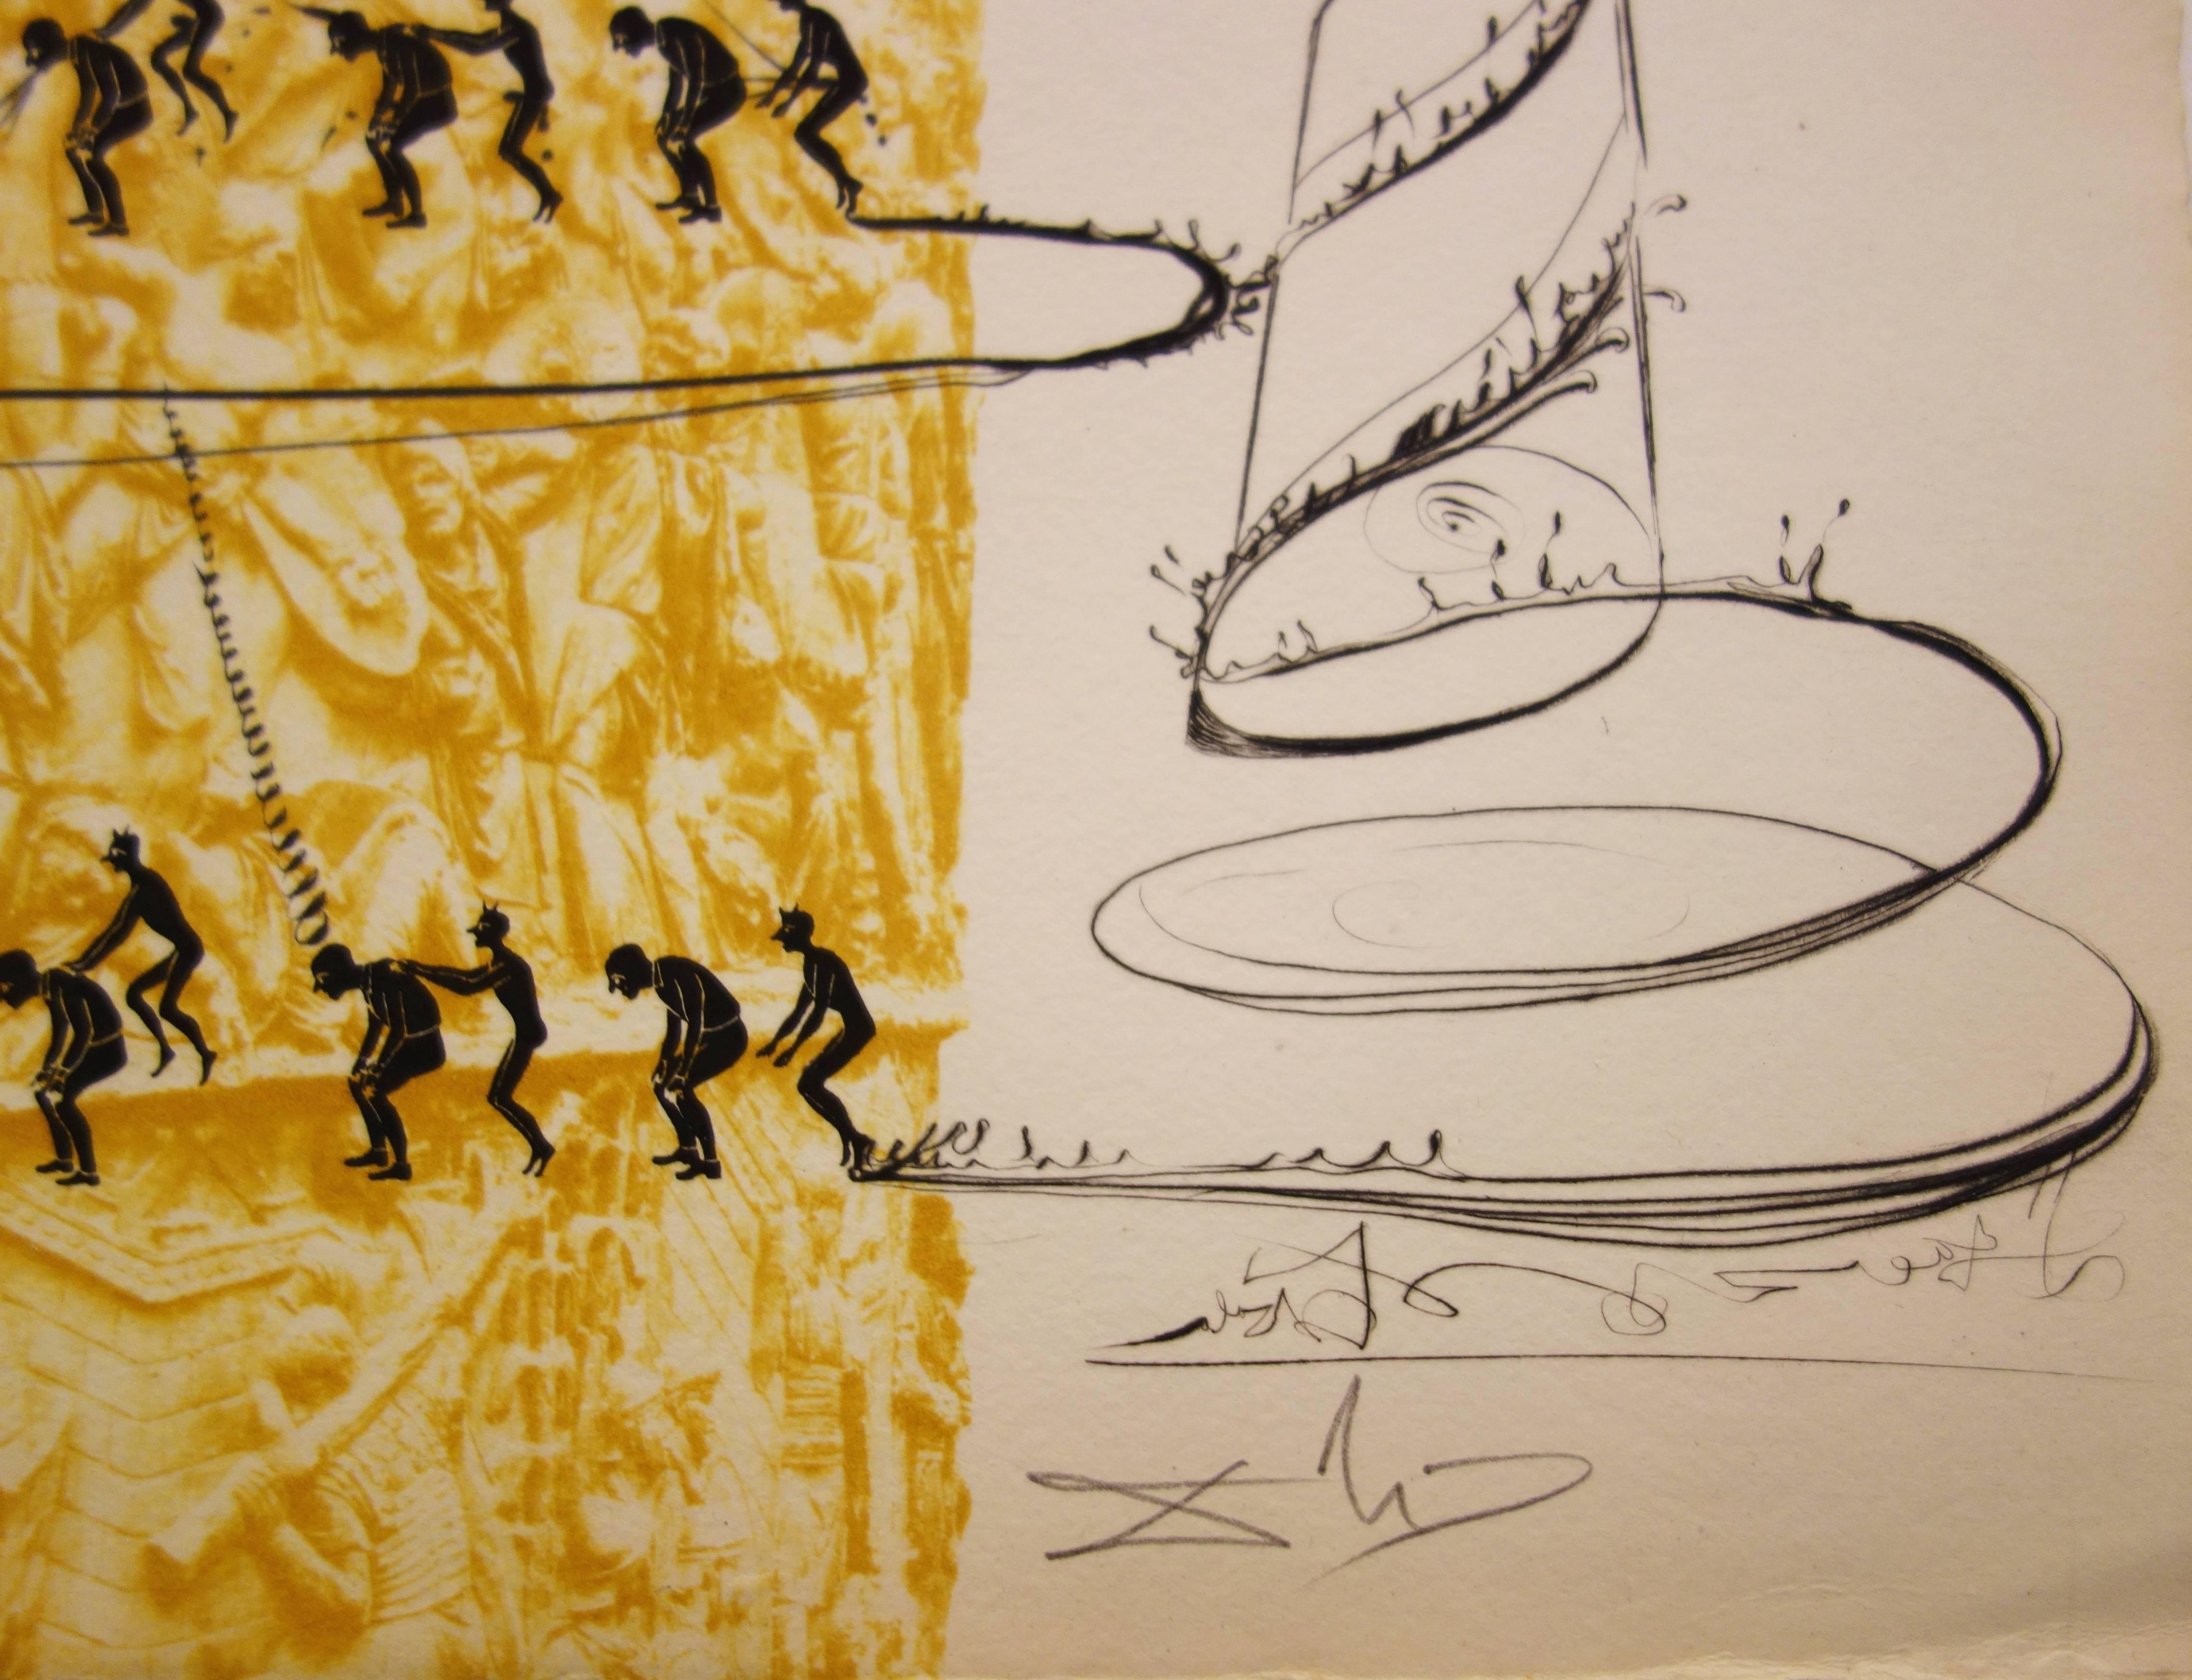 Le système caga y menja - Original etching - 1973 - Print by Salvador Dalí